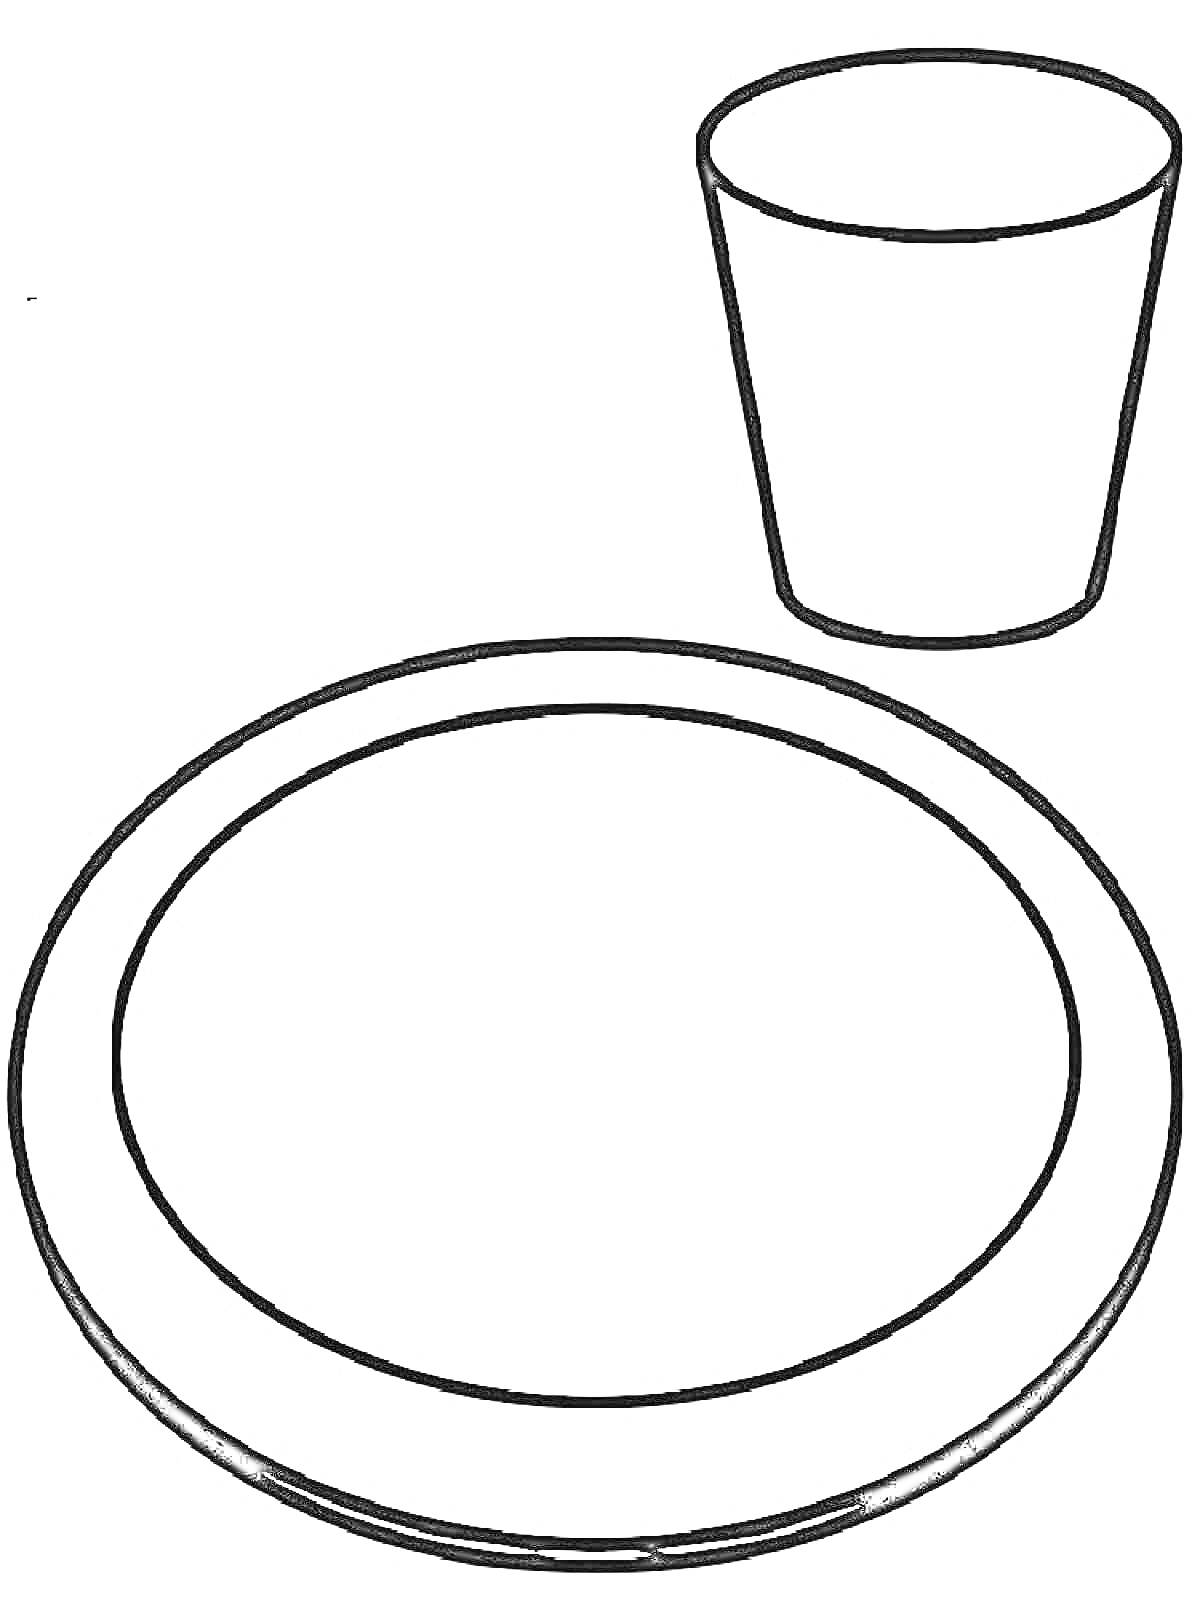 Цветная раскраска с круглой тарелкой и стаканом